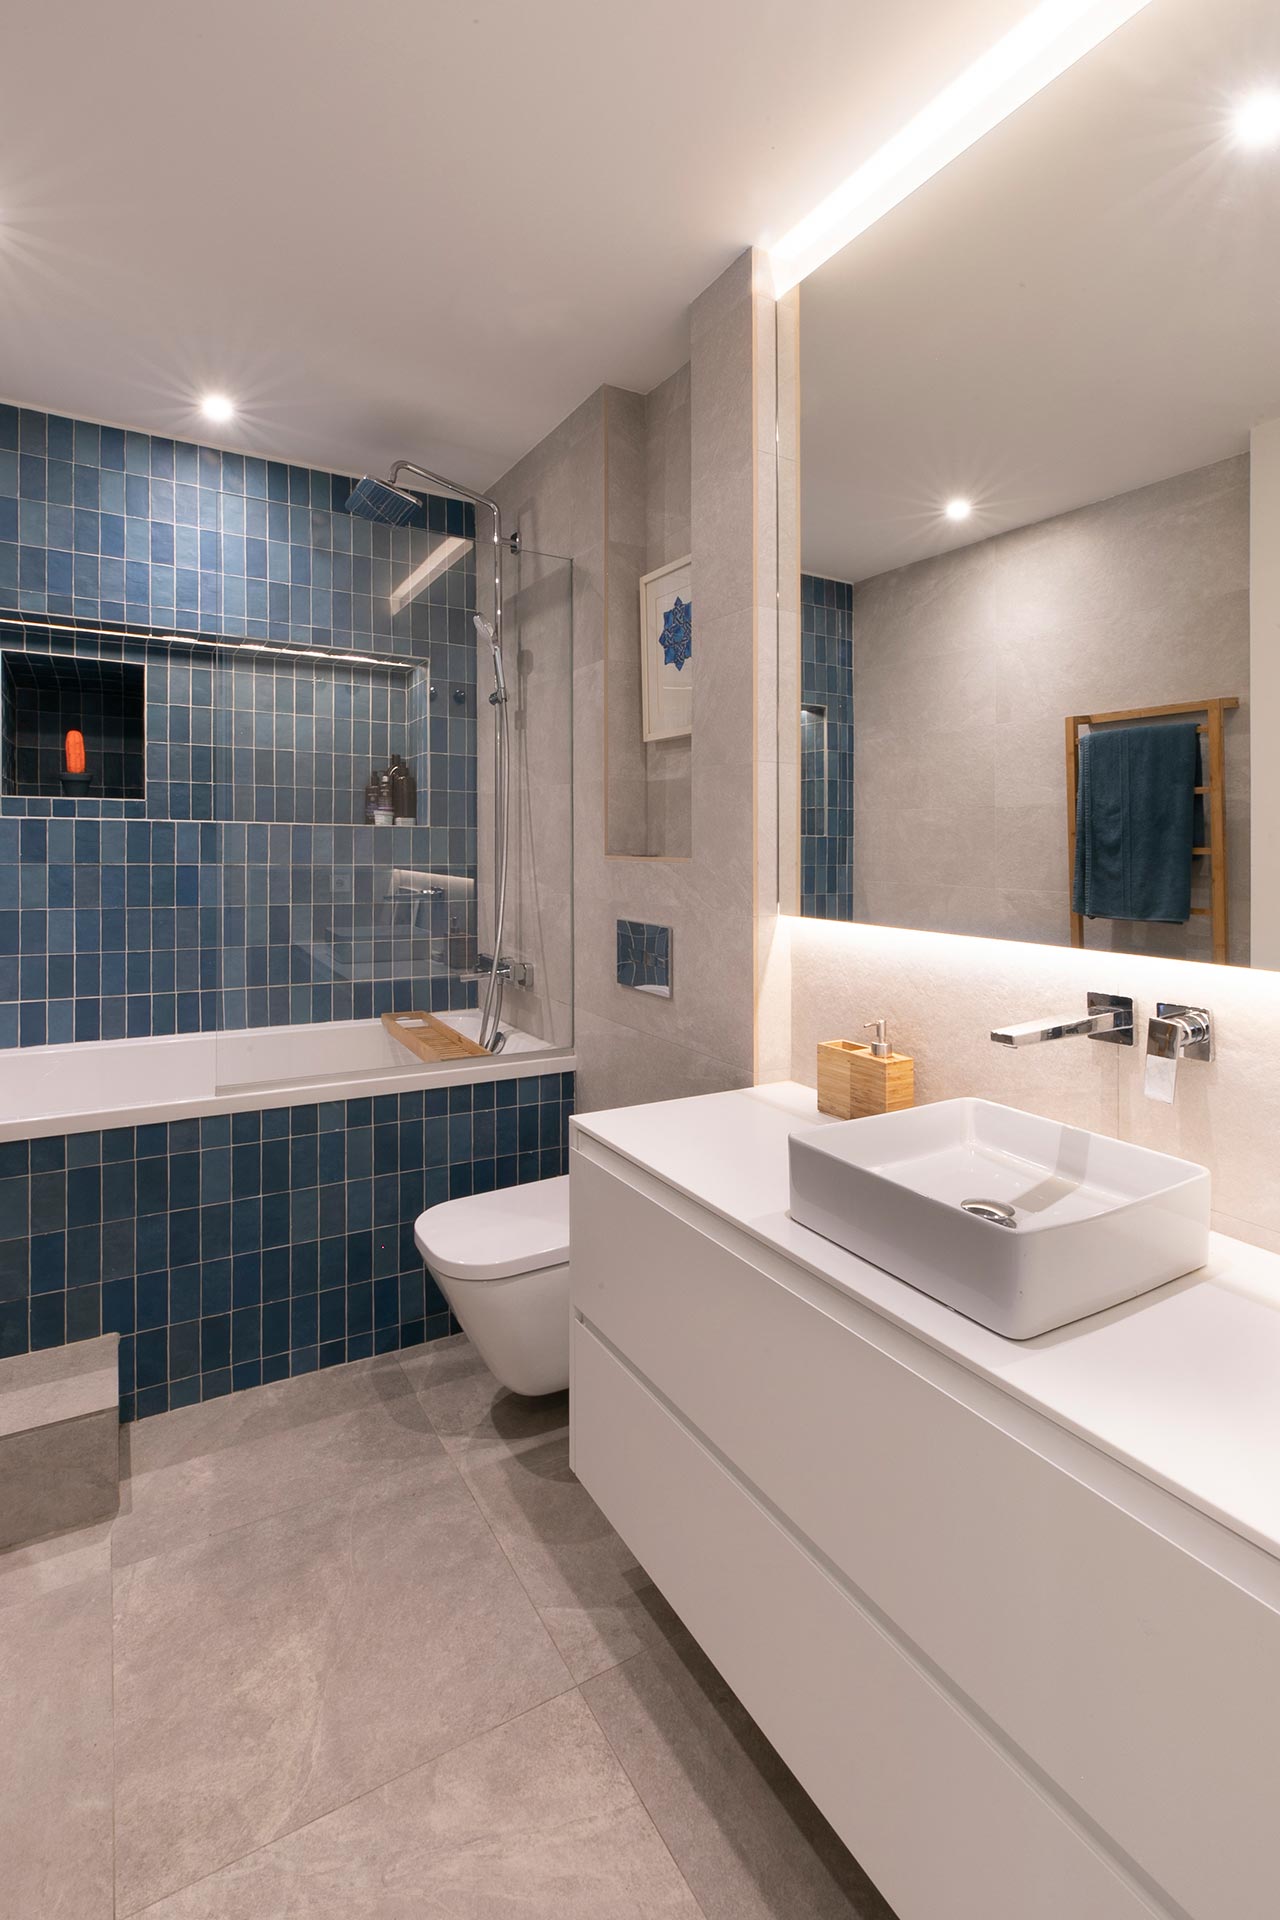 Baño con gres azul en reforma de vivienda moderna diseñada por Moah Arquitectos en Santander